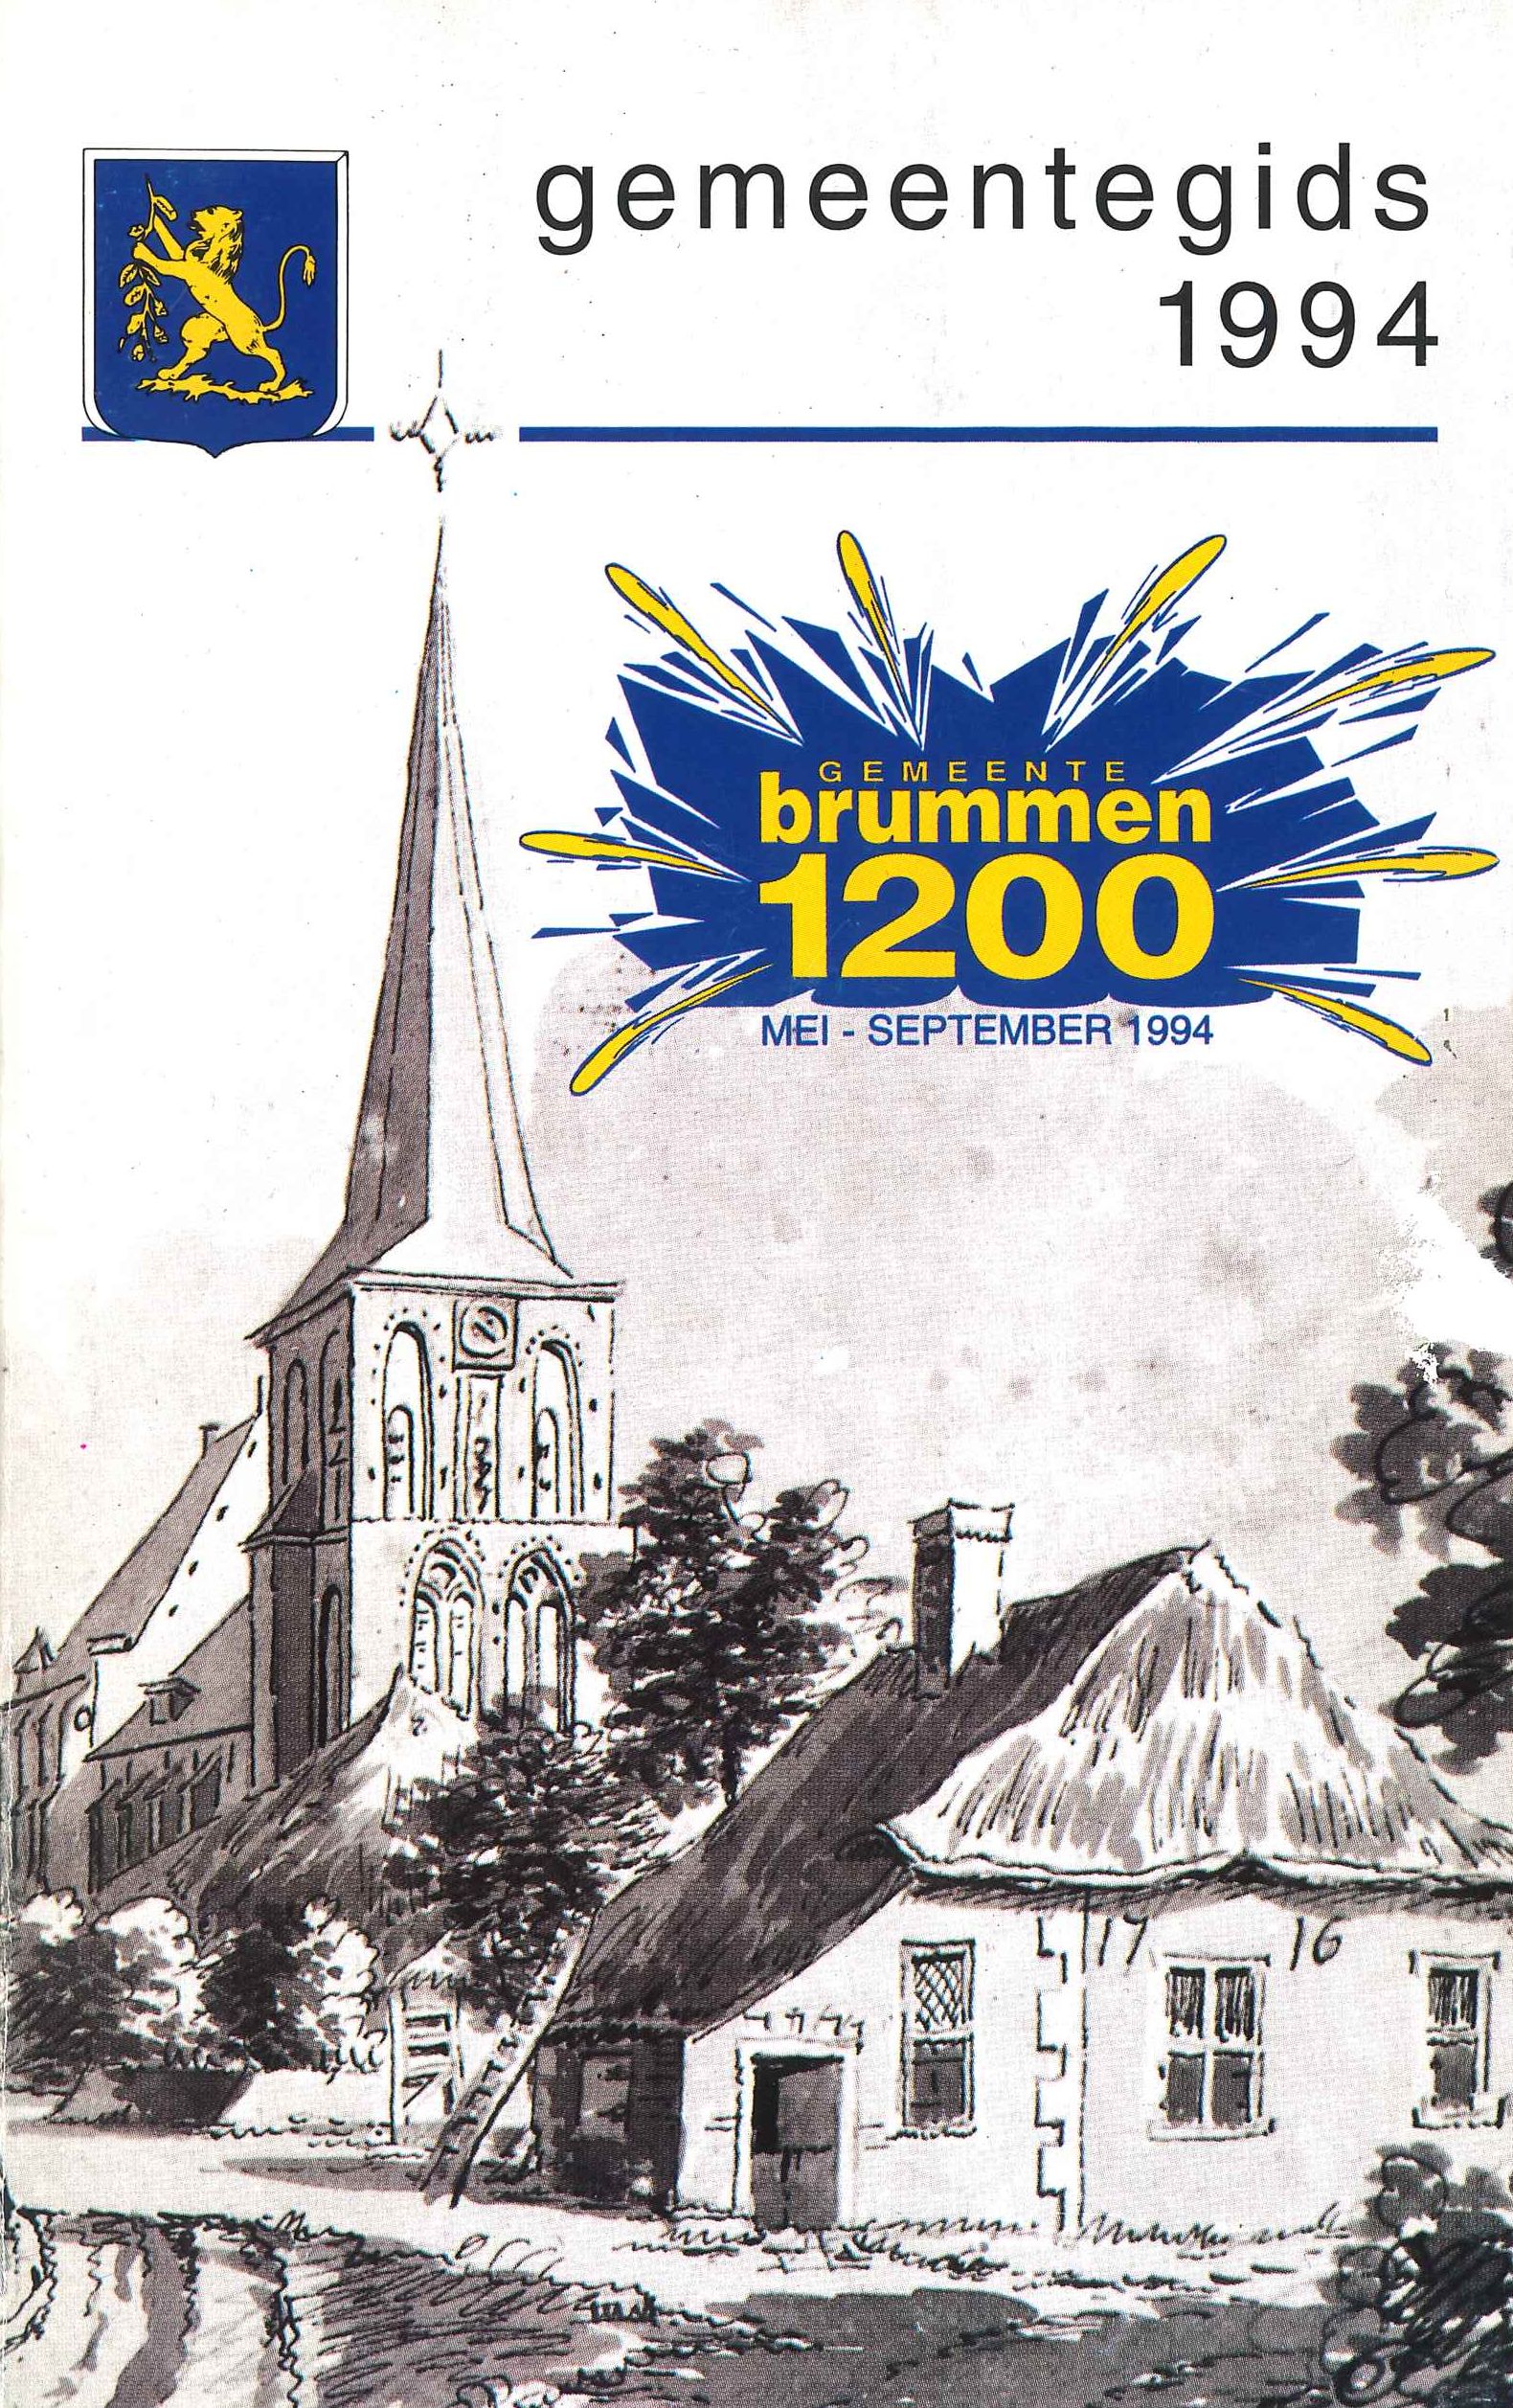 Voorkant gemeentegids. De oudste naamsvermelding van Brummen (“Brimnum”) werd gevonden in een oorkonde uit het jaar 794. In 1994 werd daarom het 1200-jarig bestaan van de gemeente gevierd.